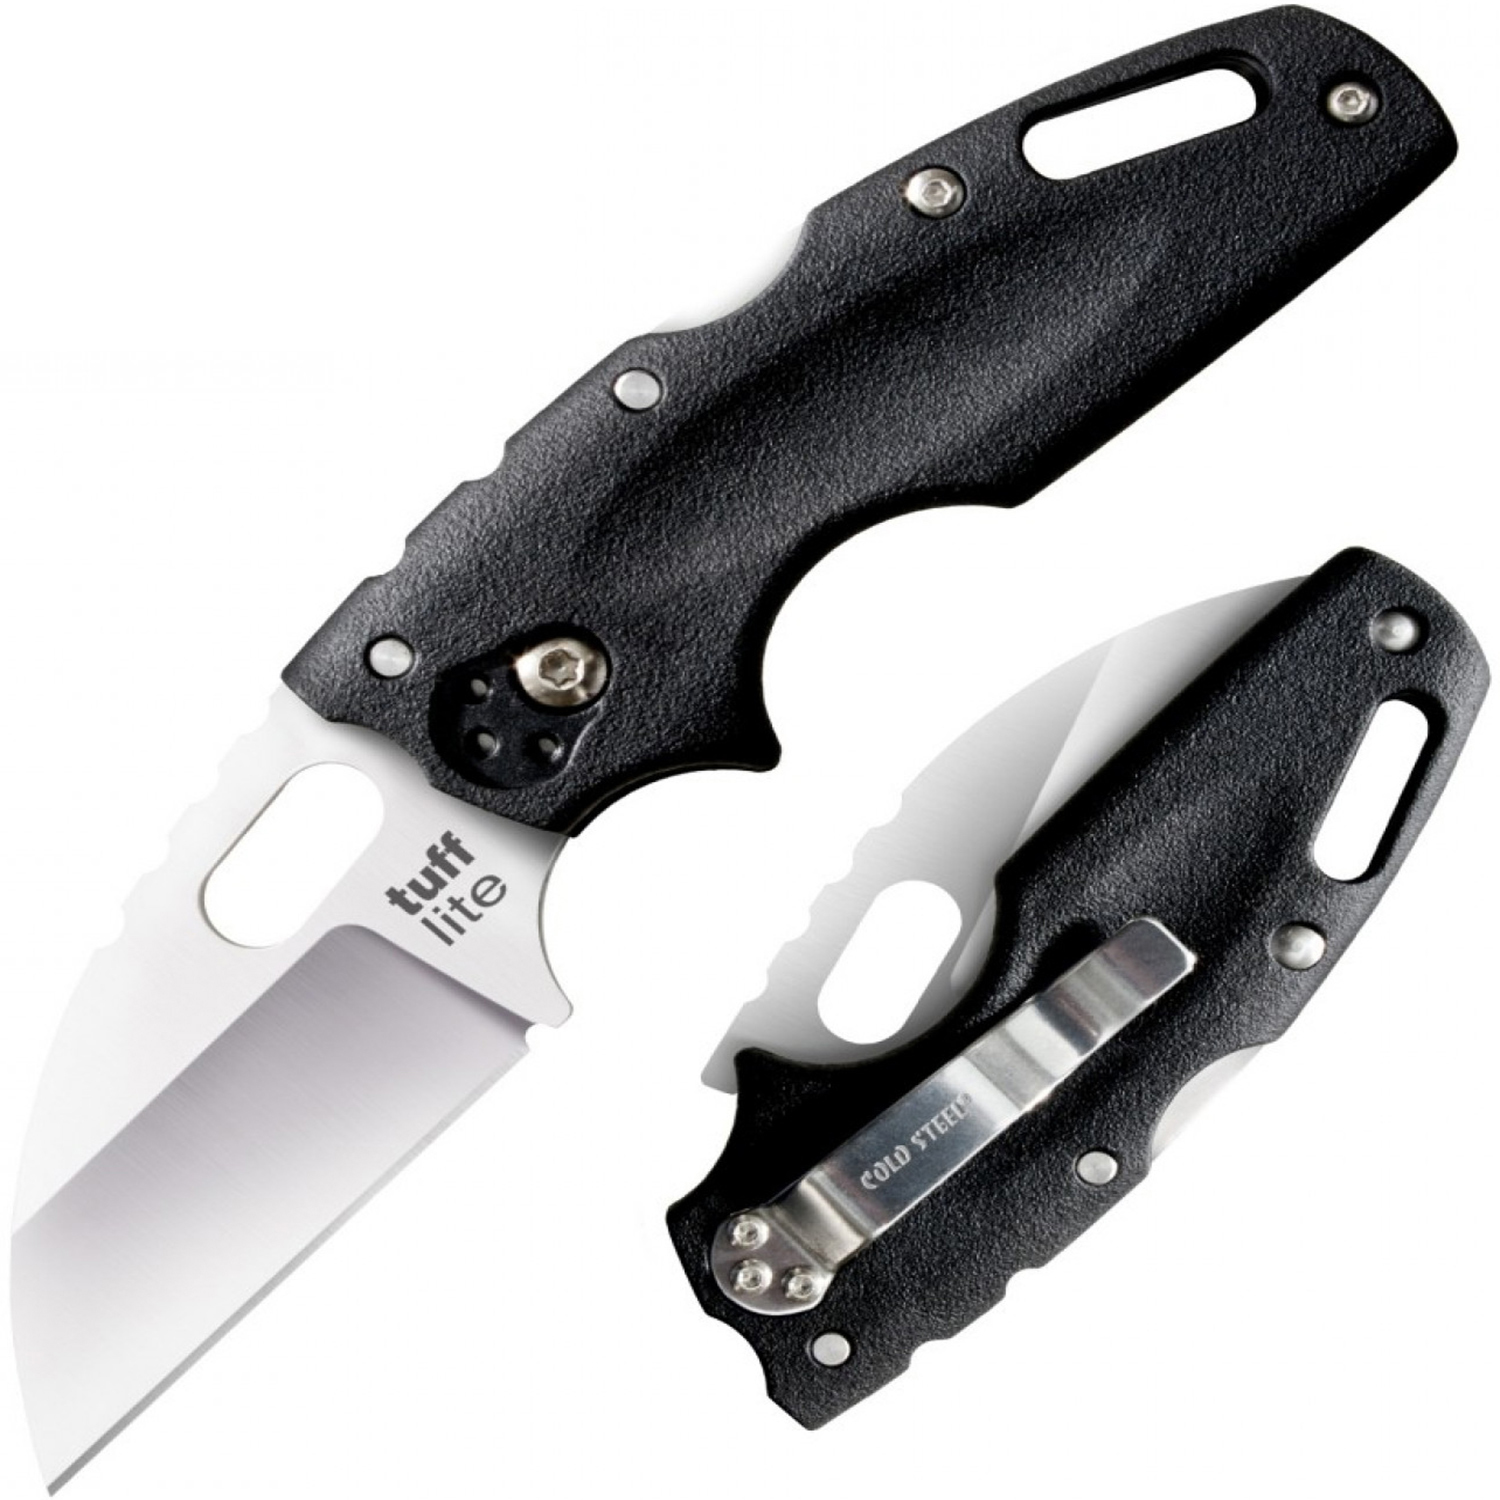 Нож складной Cold Steel Tuff Lite, сталь AUS-8A, рукоять grivory, black многофункциональный маленький складной нож huohou